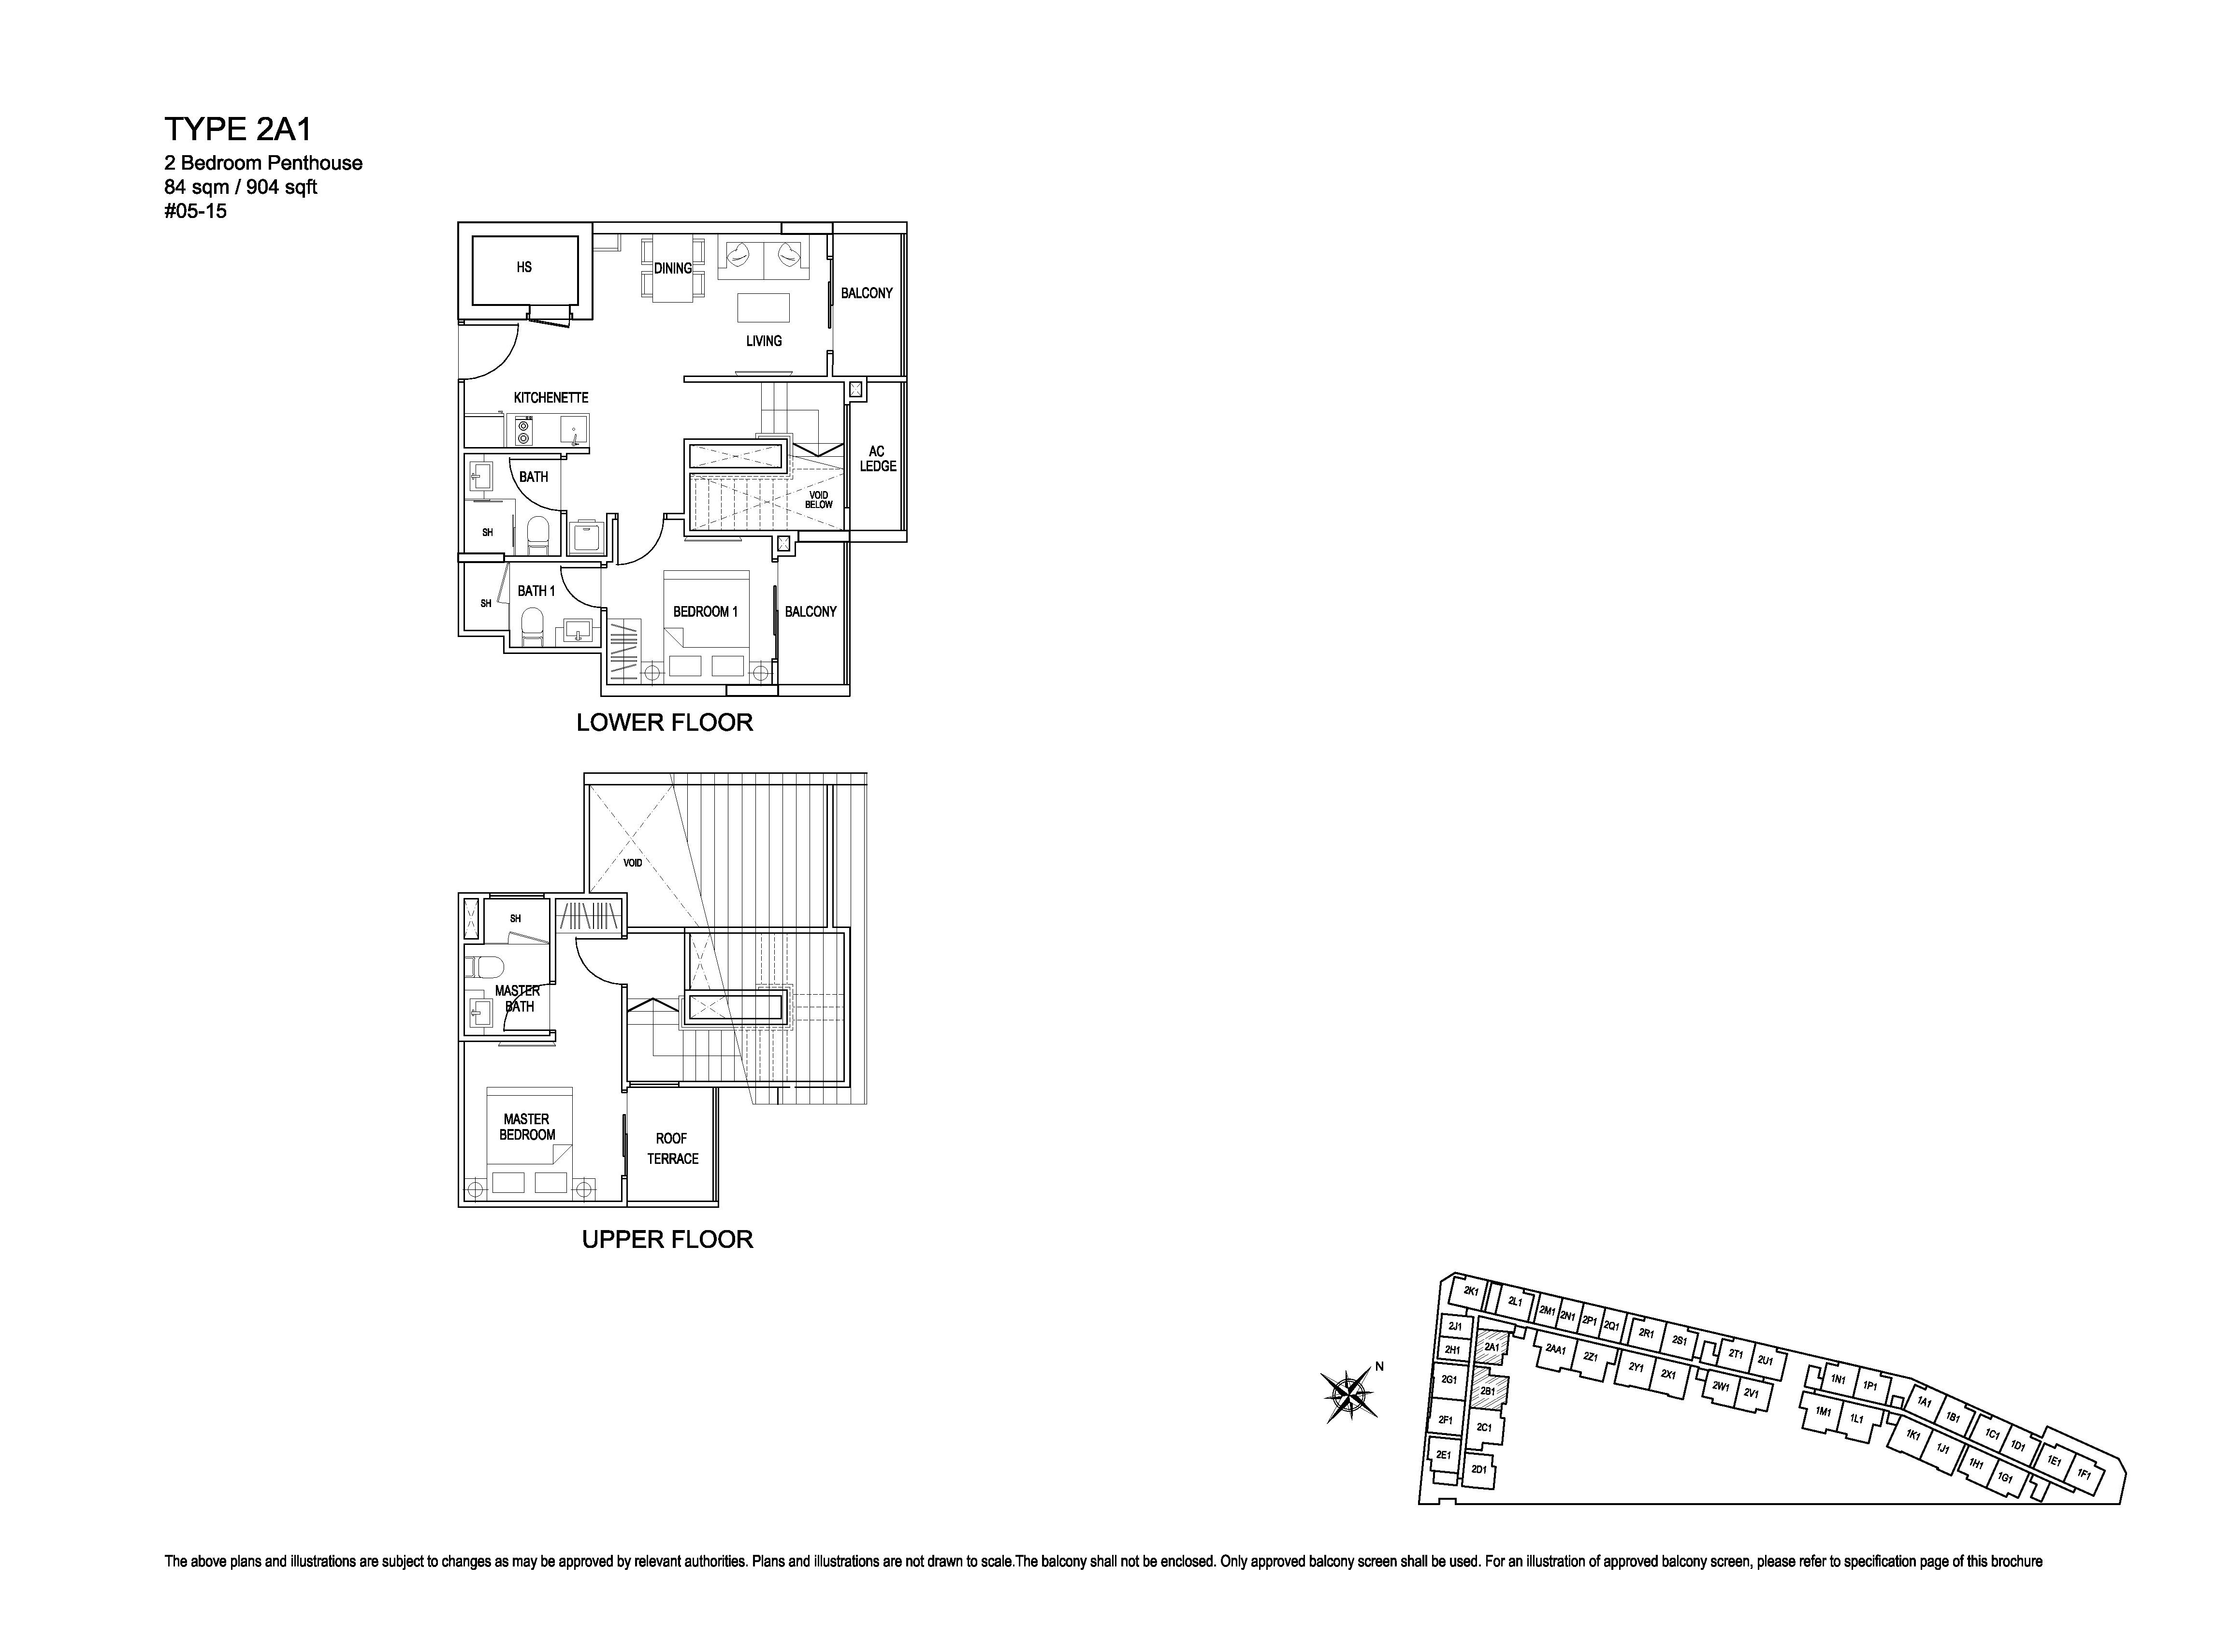 Kensington Square 2 Bedroom Penthouse Floor Plans Type 2A1